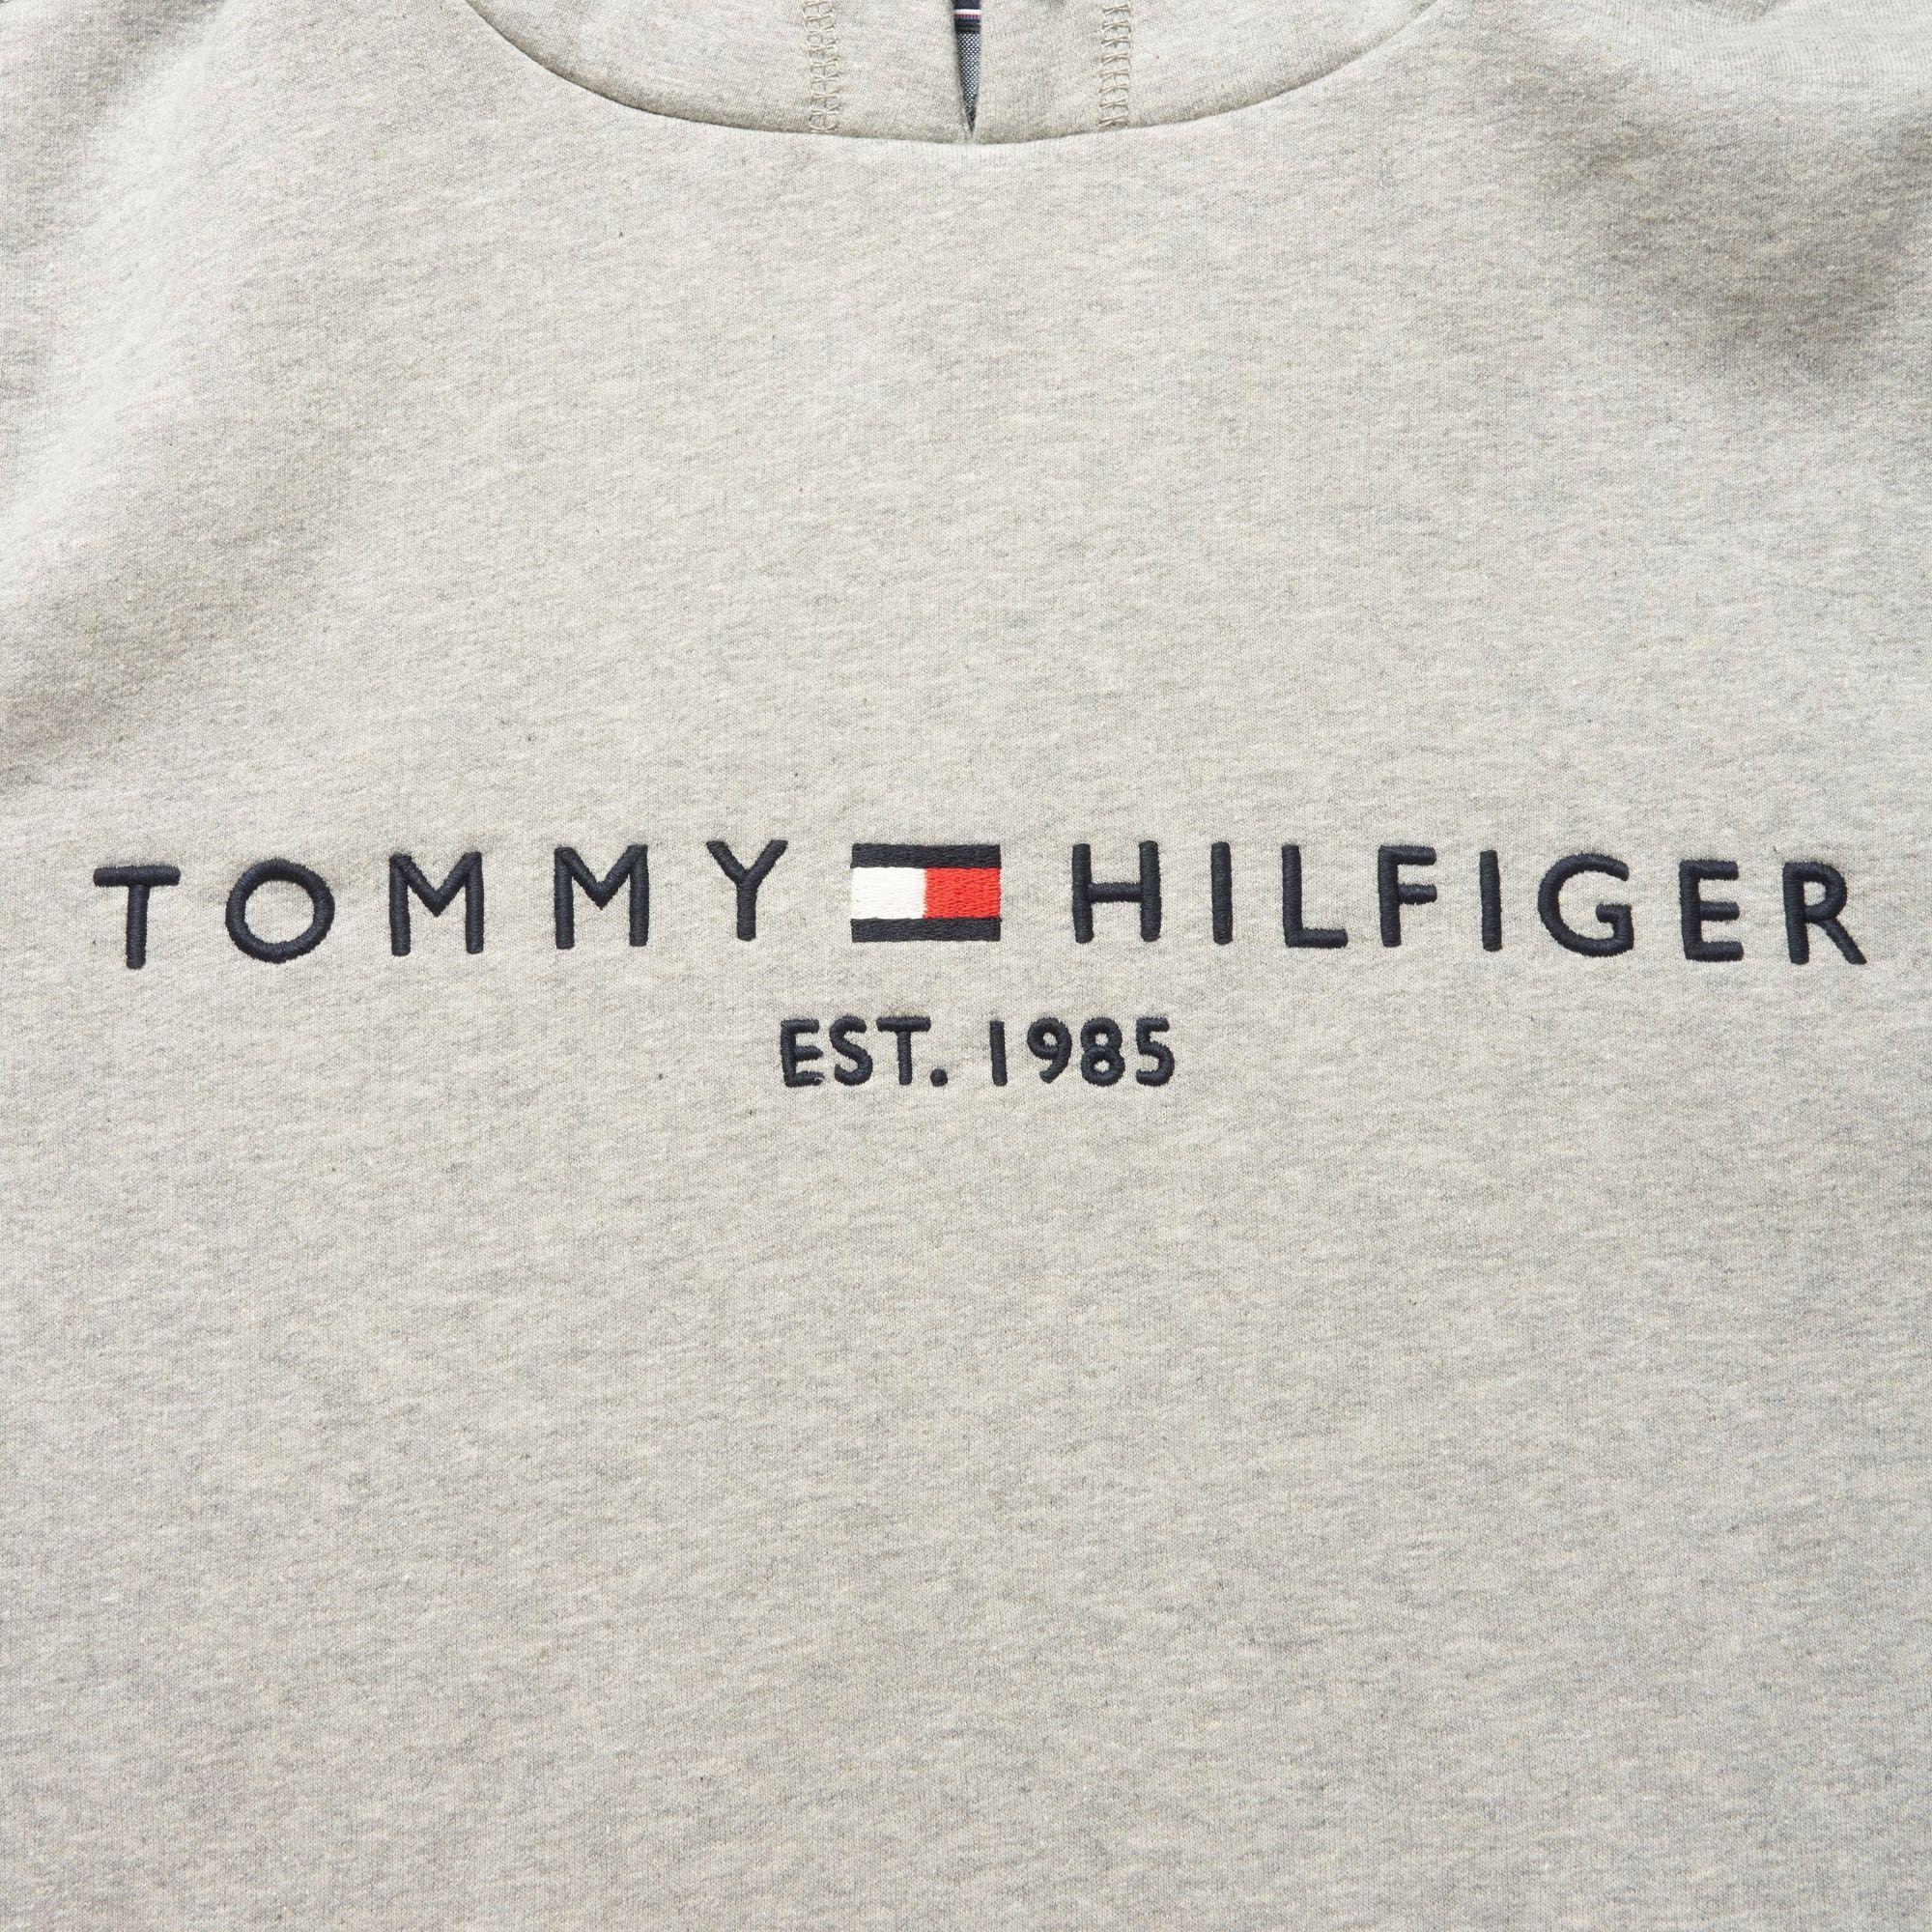 tommy hilfiger logo download